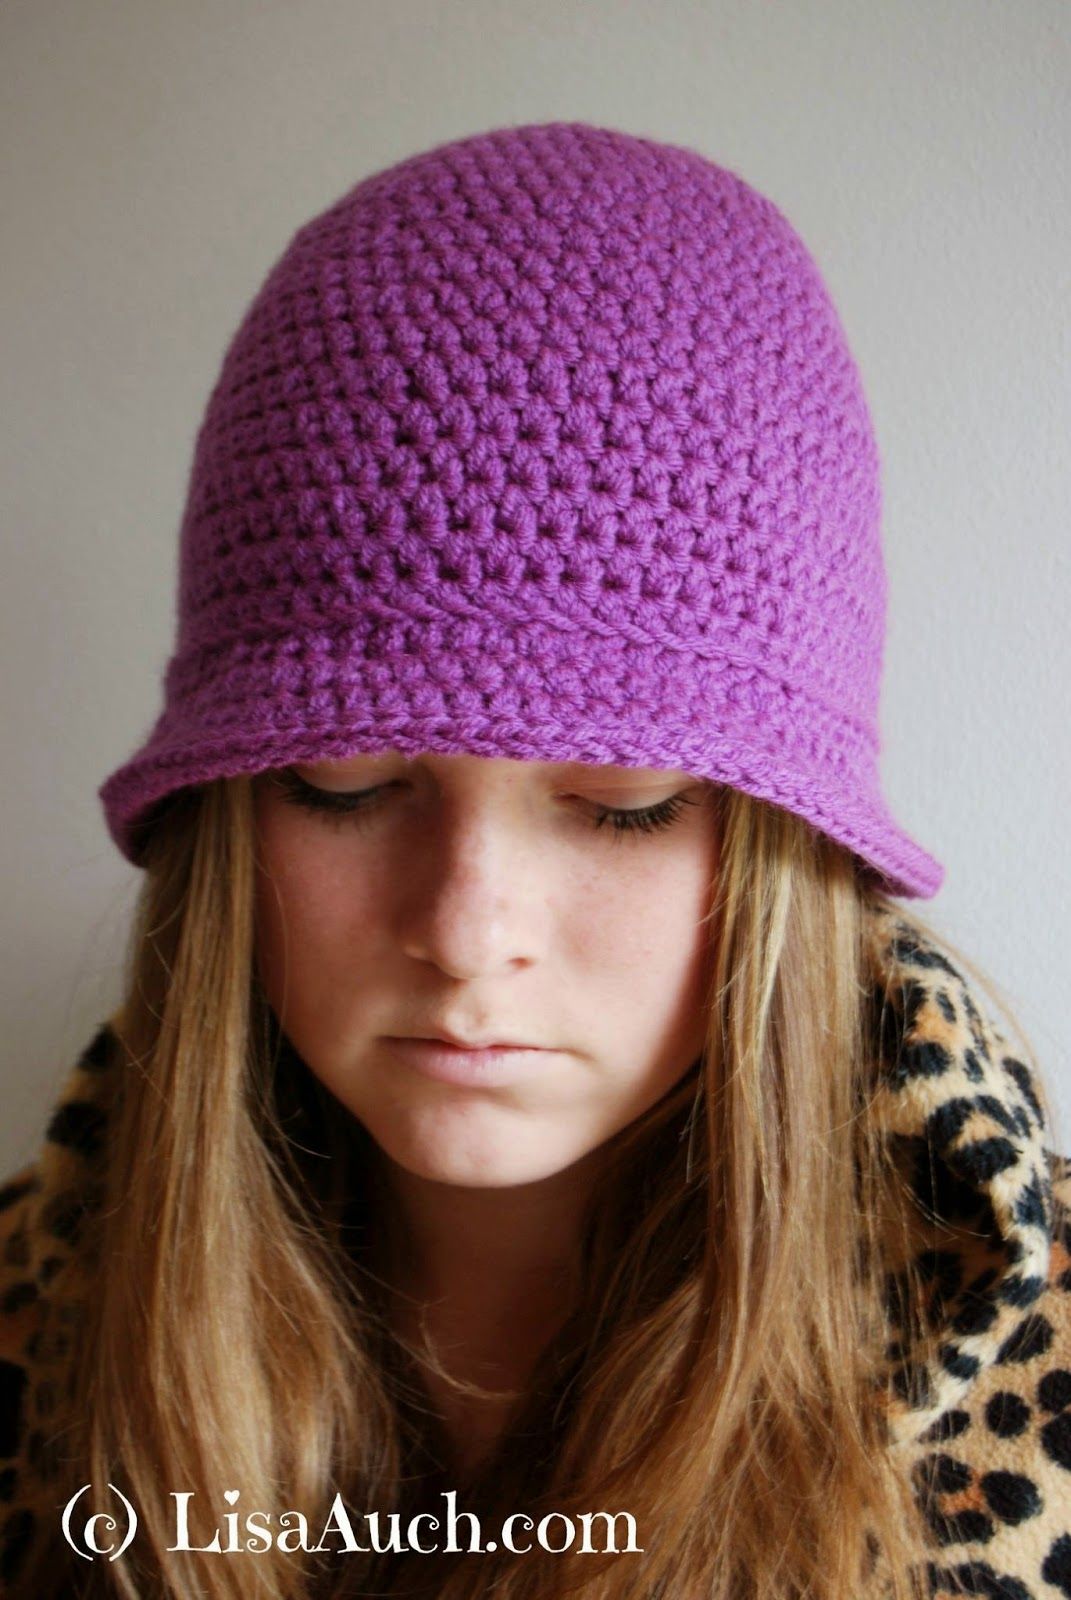 Bucket Hat Free Crochet Pattern in Half Double Crochet | Crochet hats